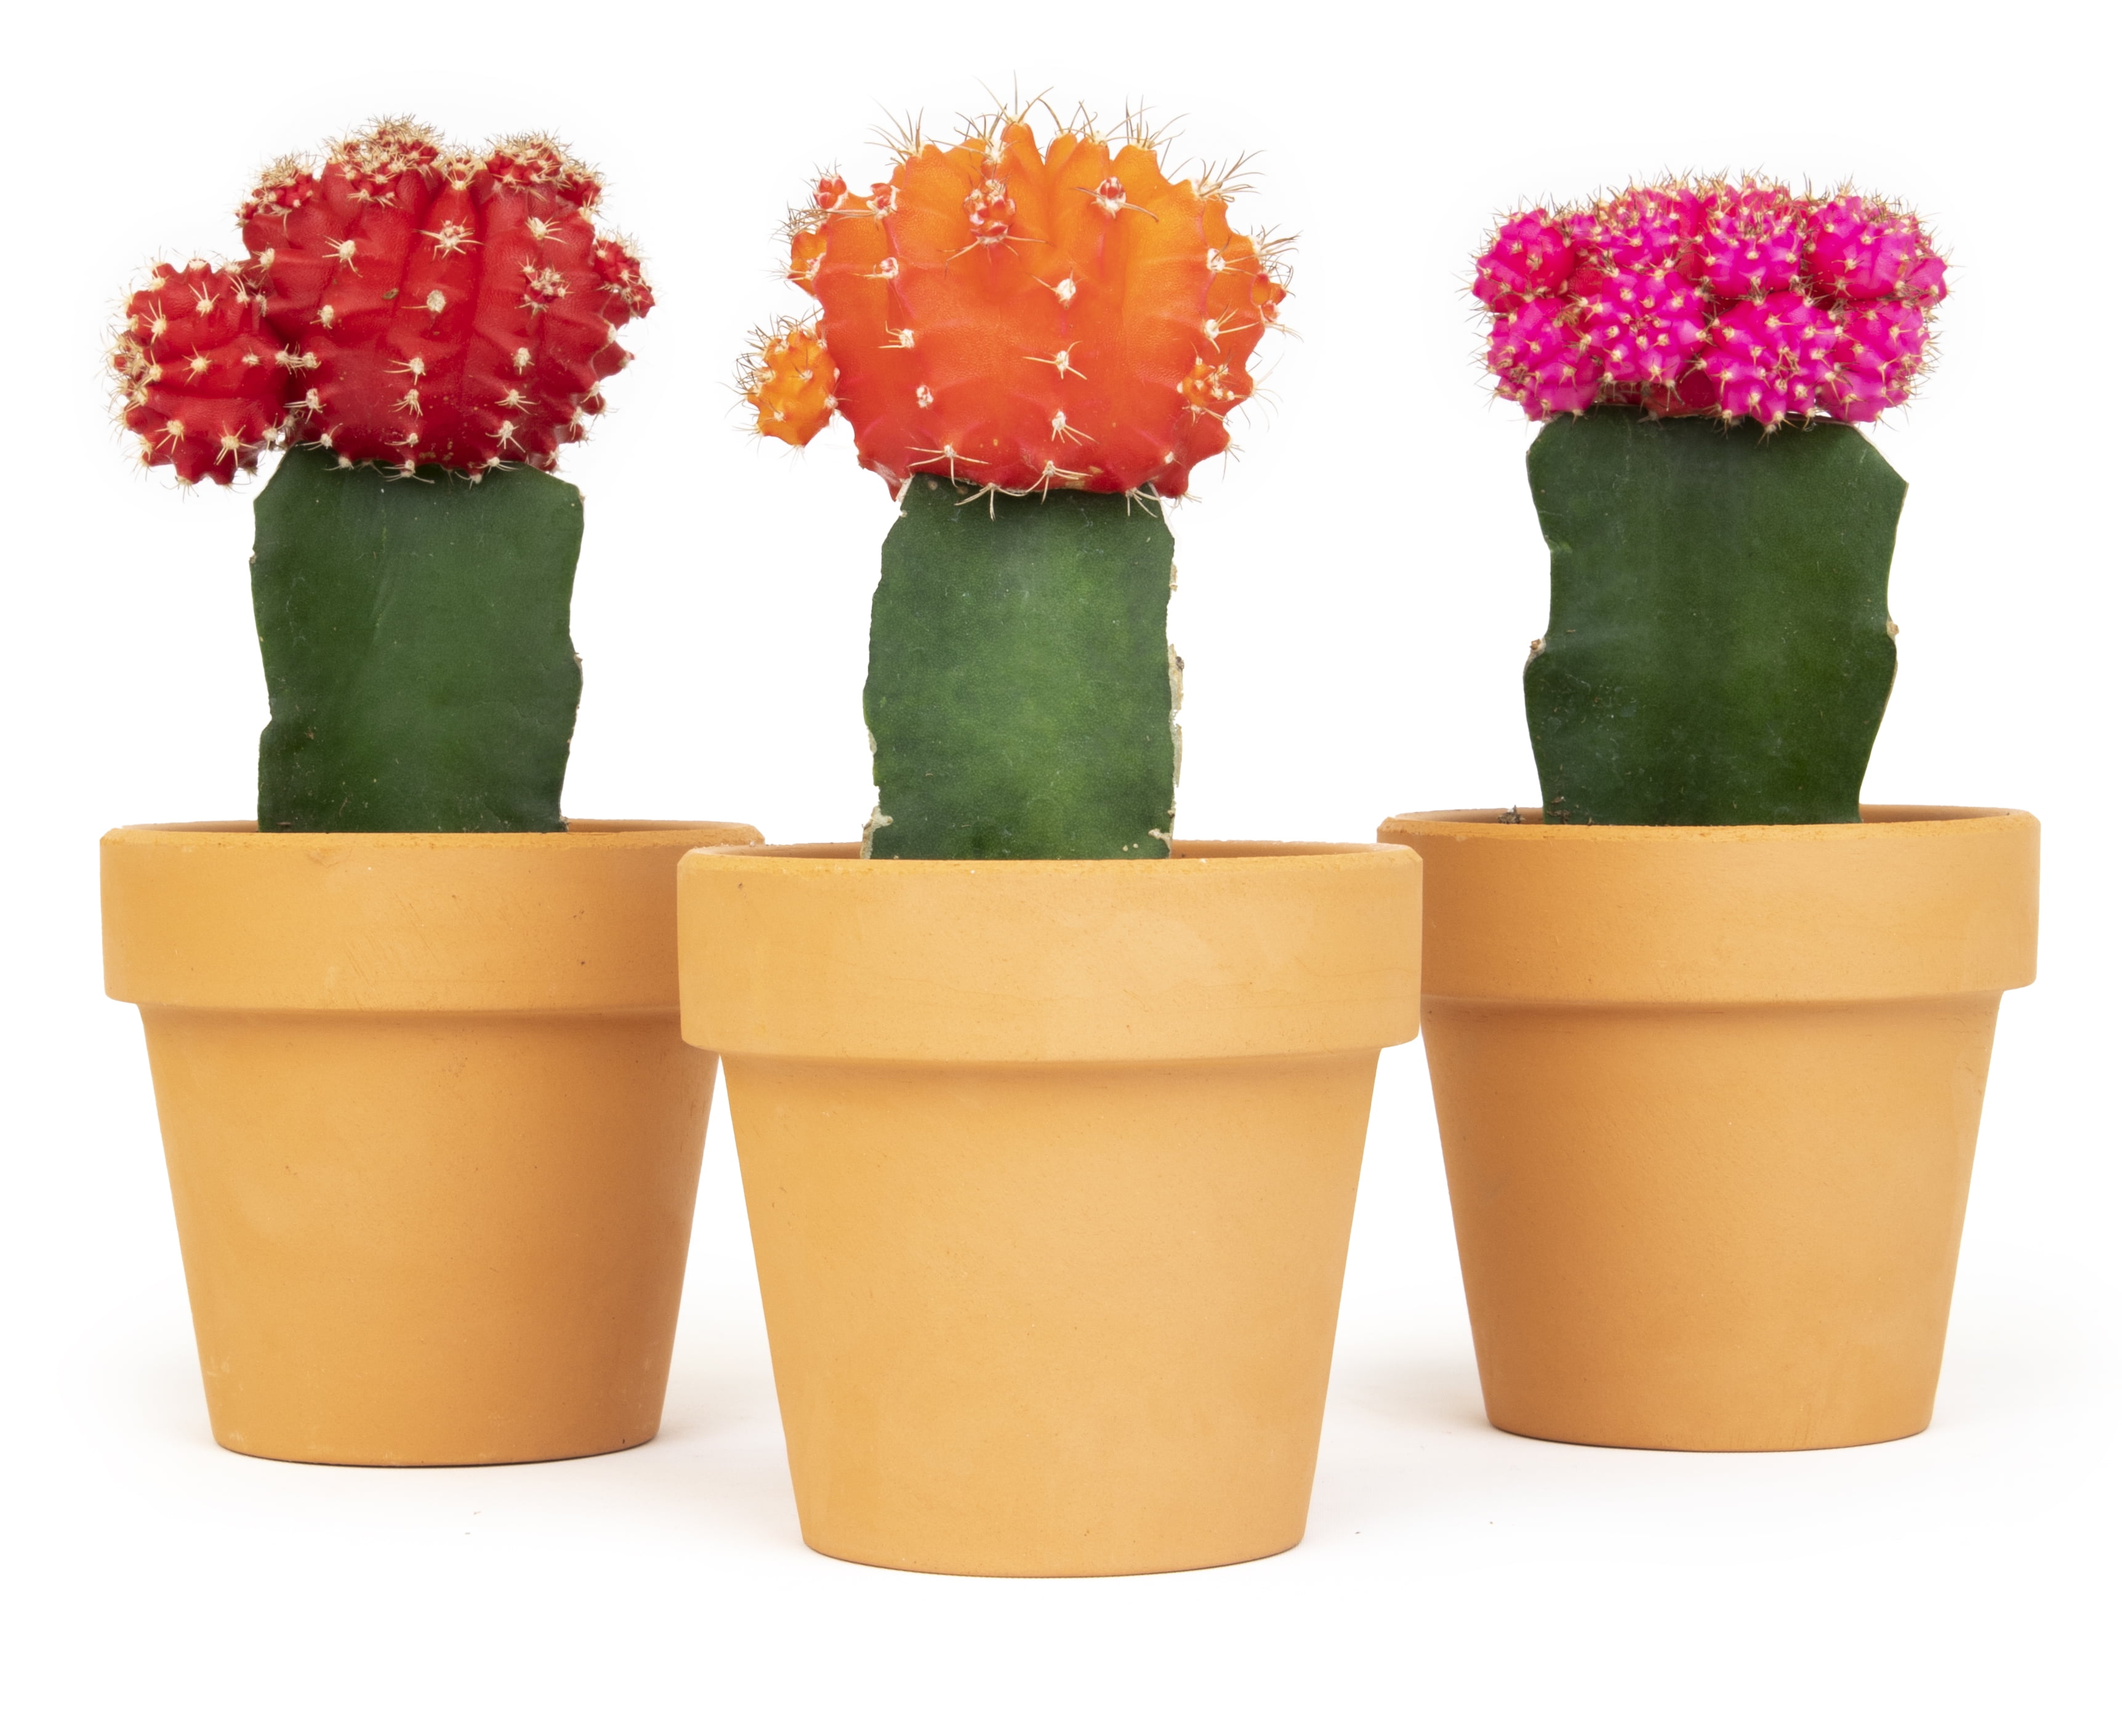 10 Cactus Plants Potted Terracotta 2 pots, assorted cactus plants